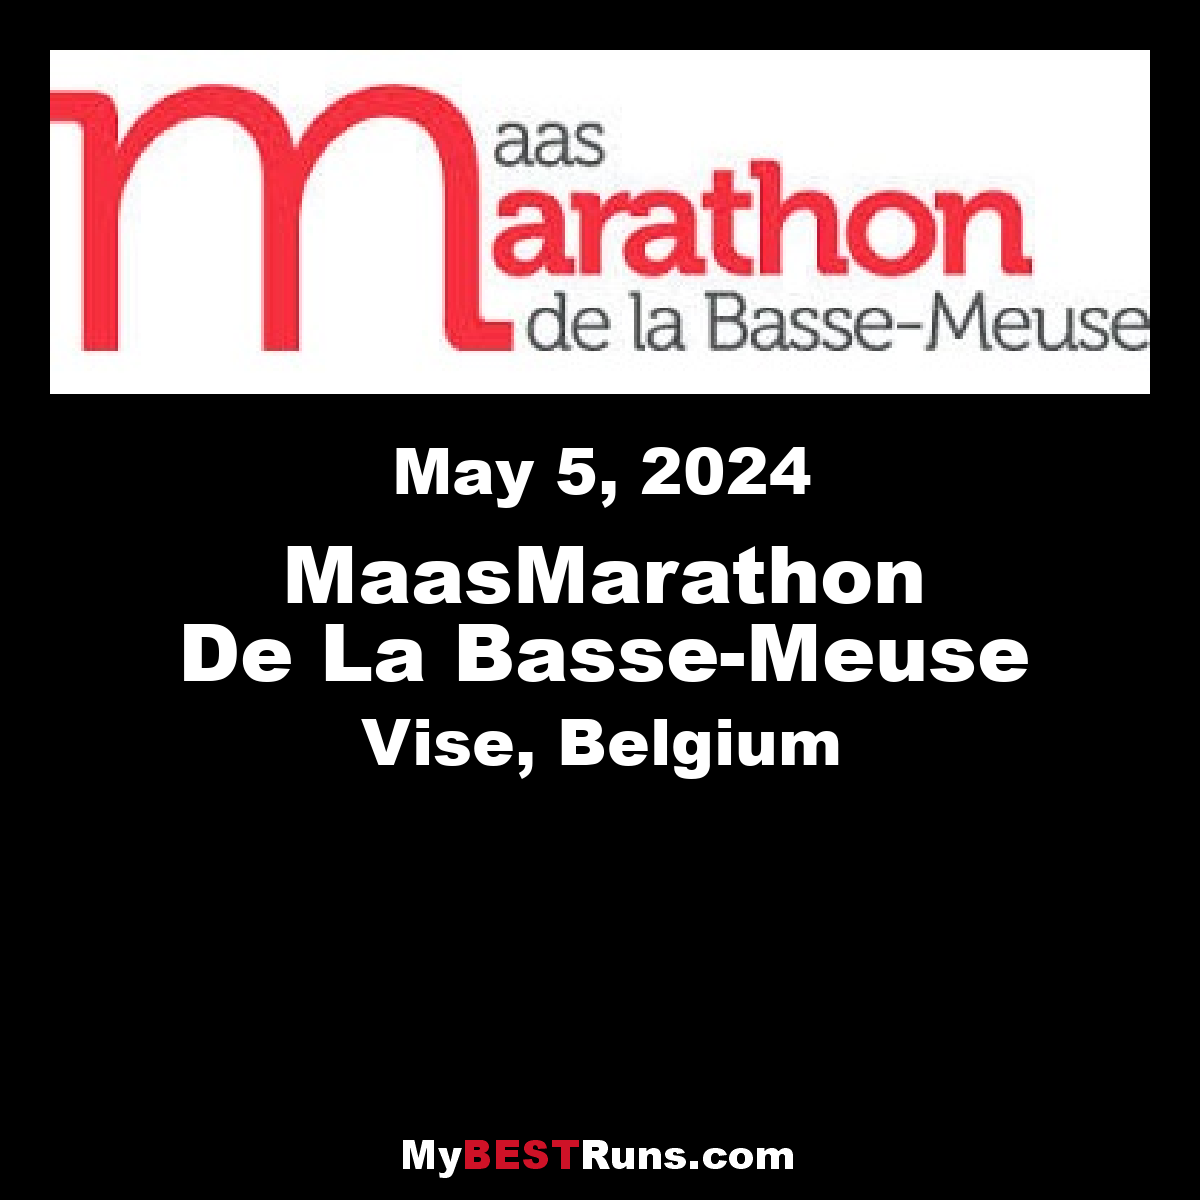 Maas Marathon De La Basse-Meuse